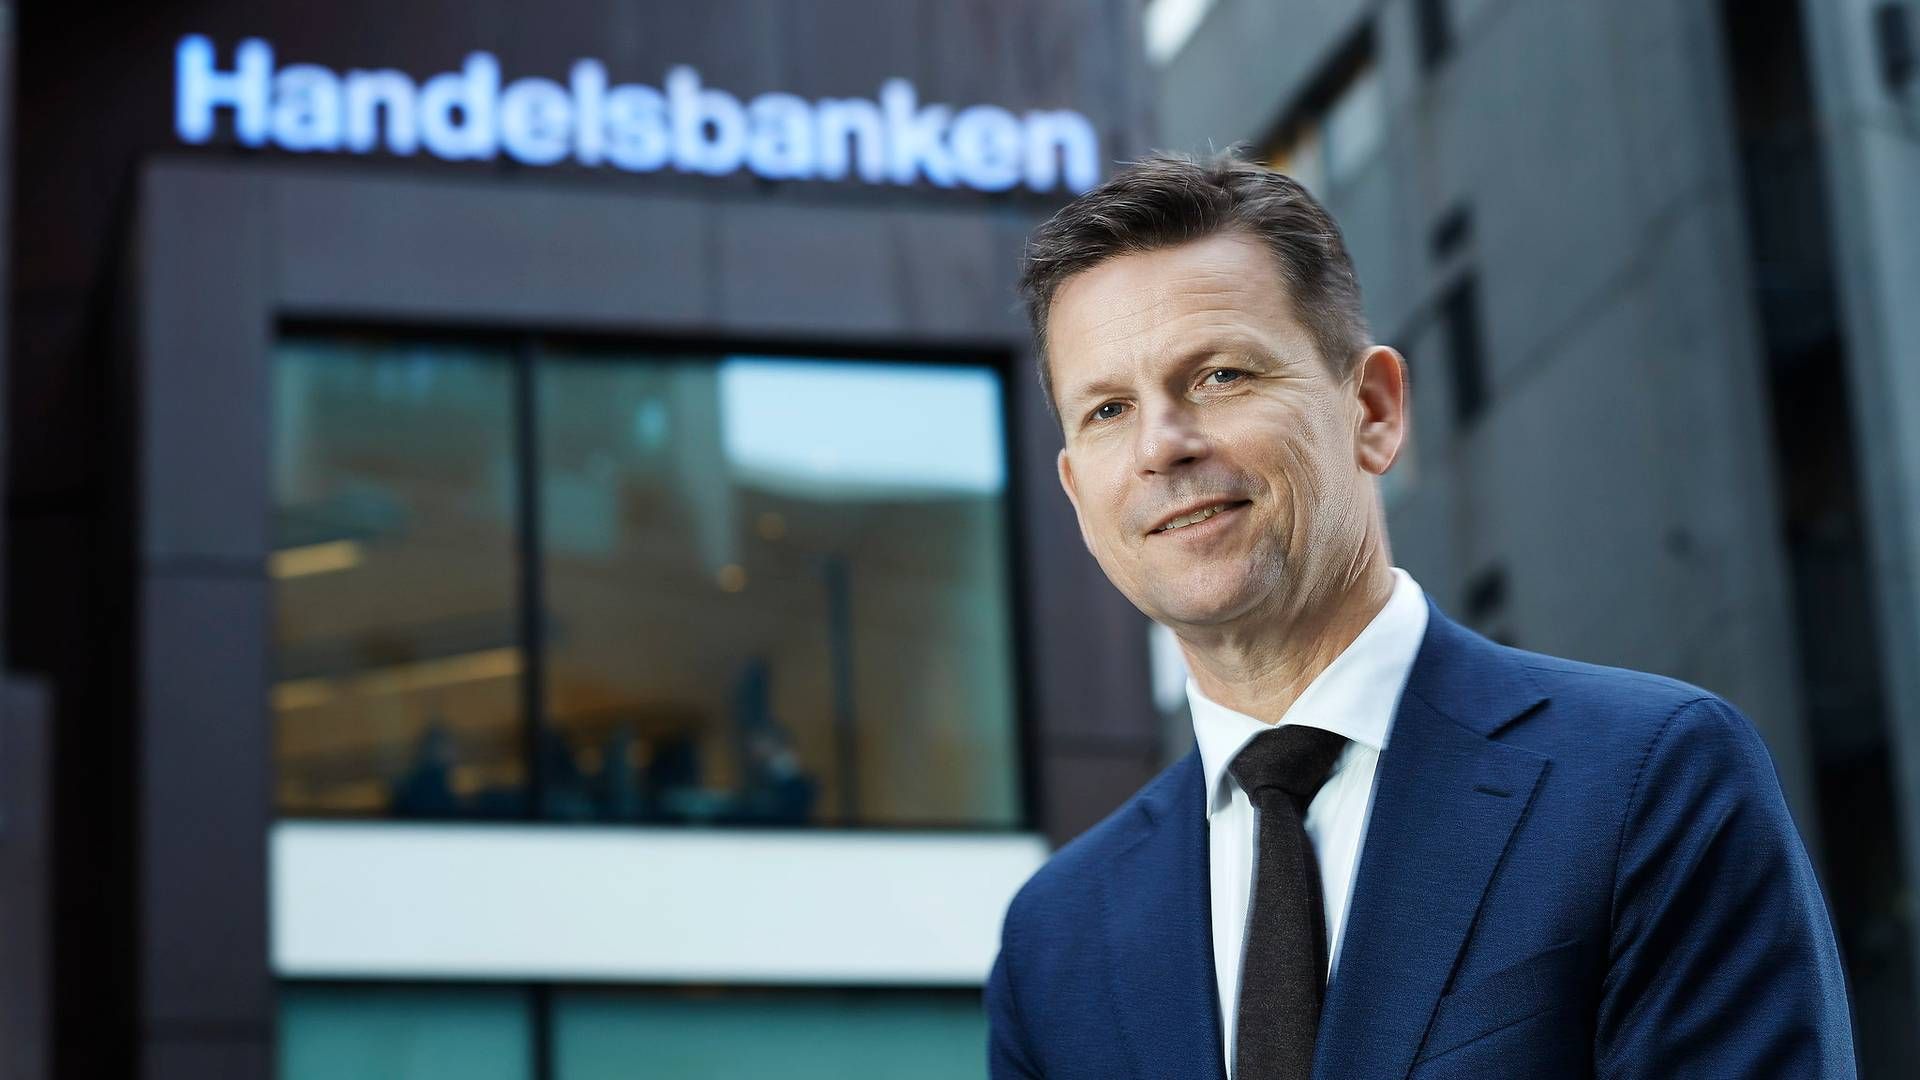 Landssjef Arild Andersen i Handelsbanken Norge ser frem til videre vekst med banken.